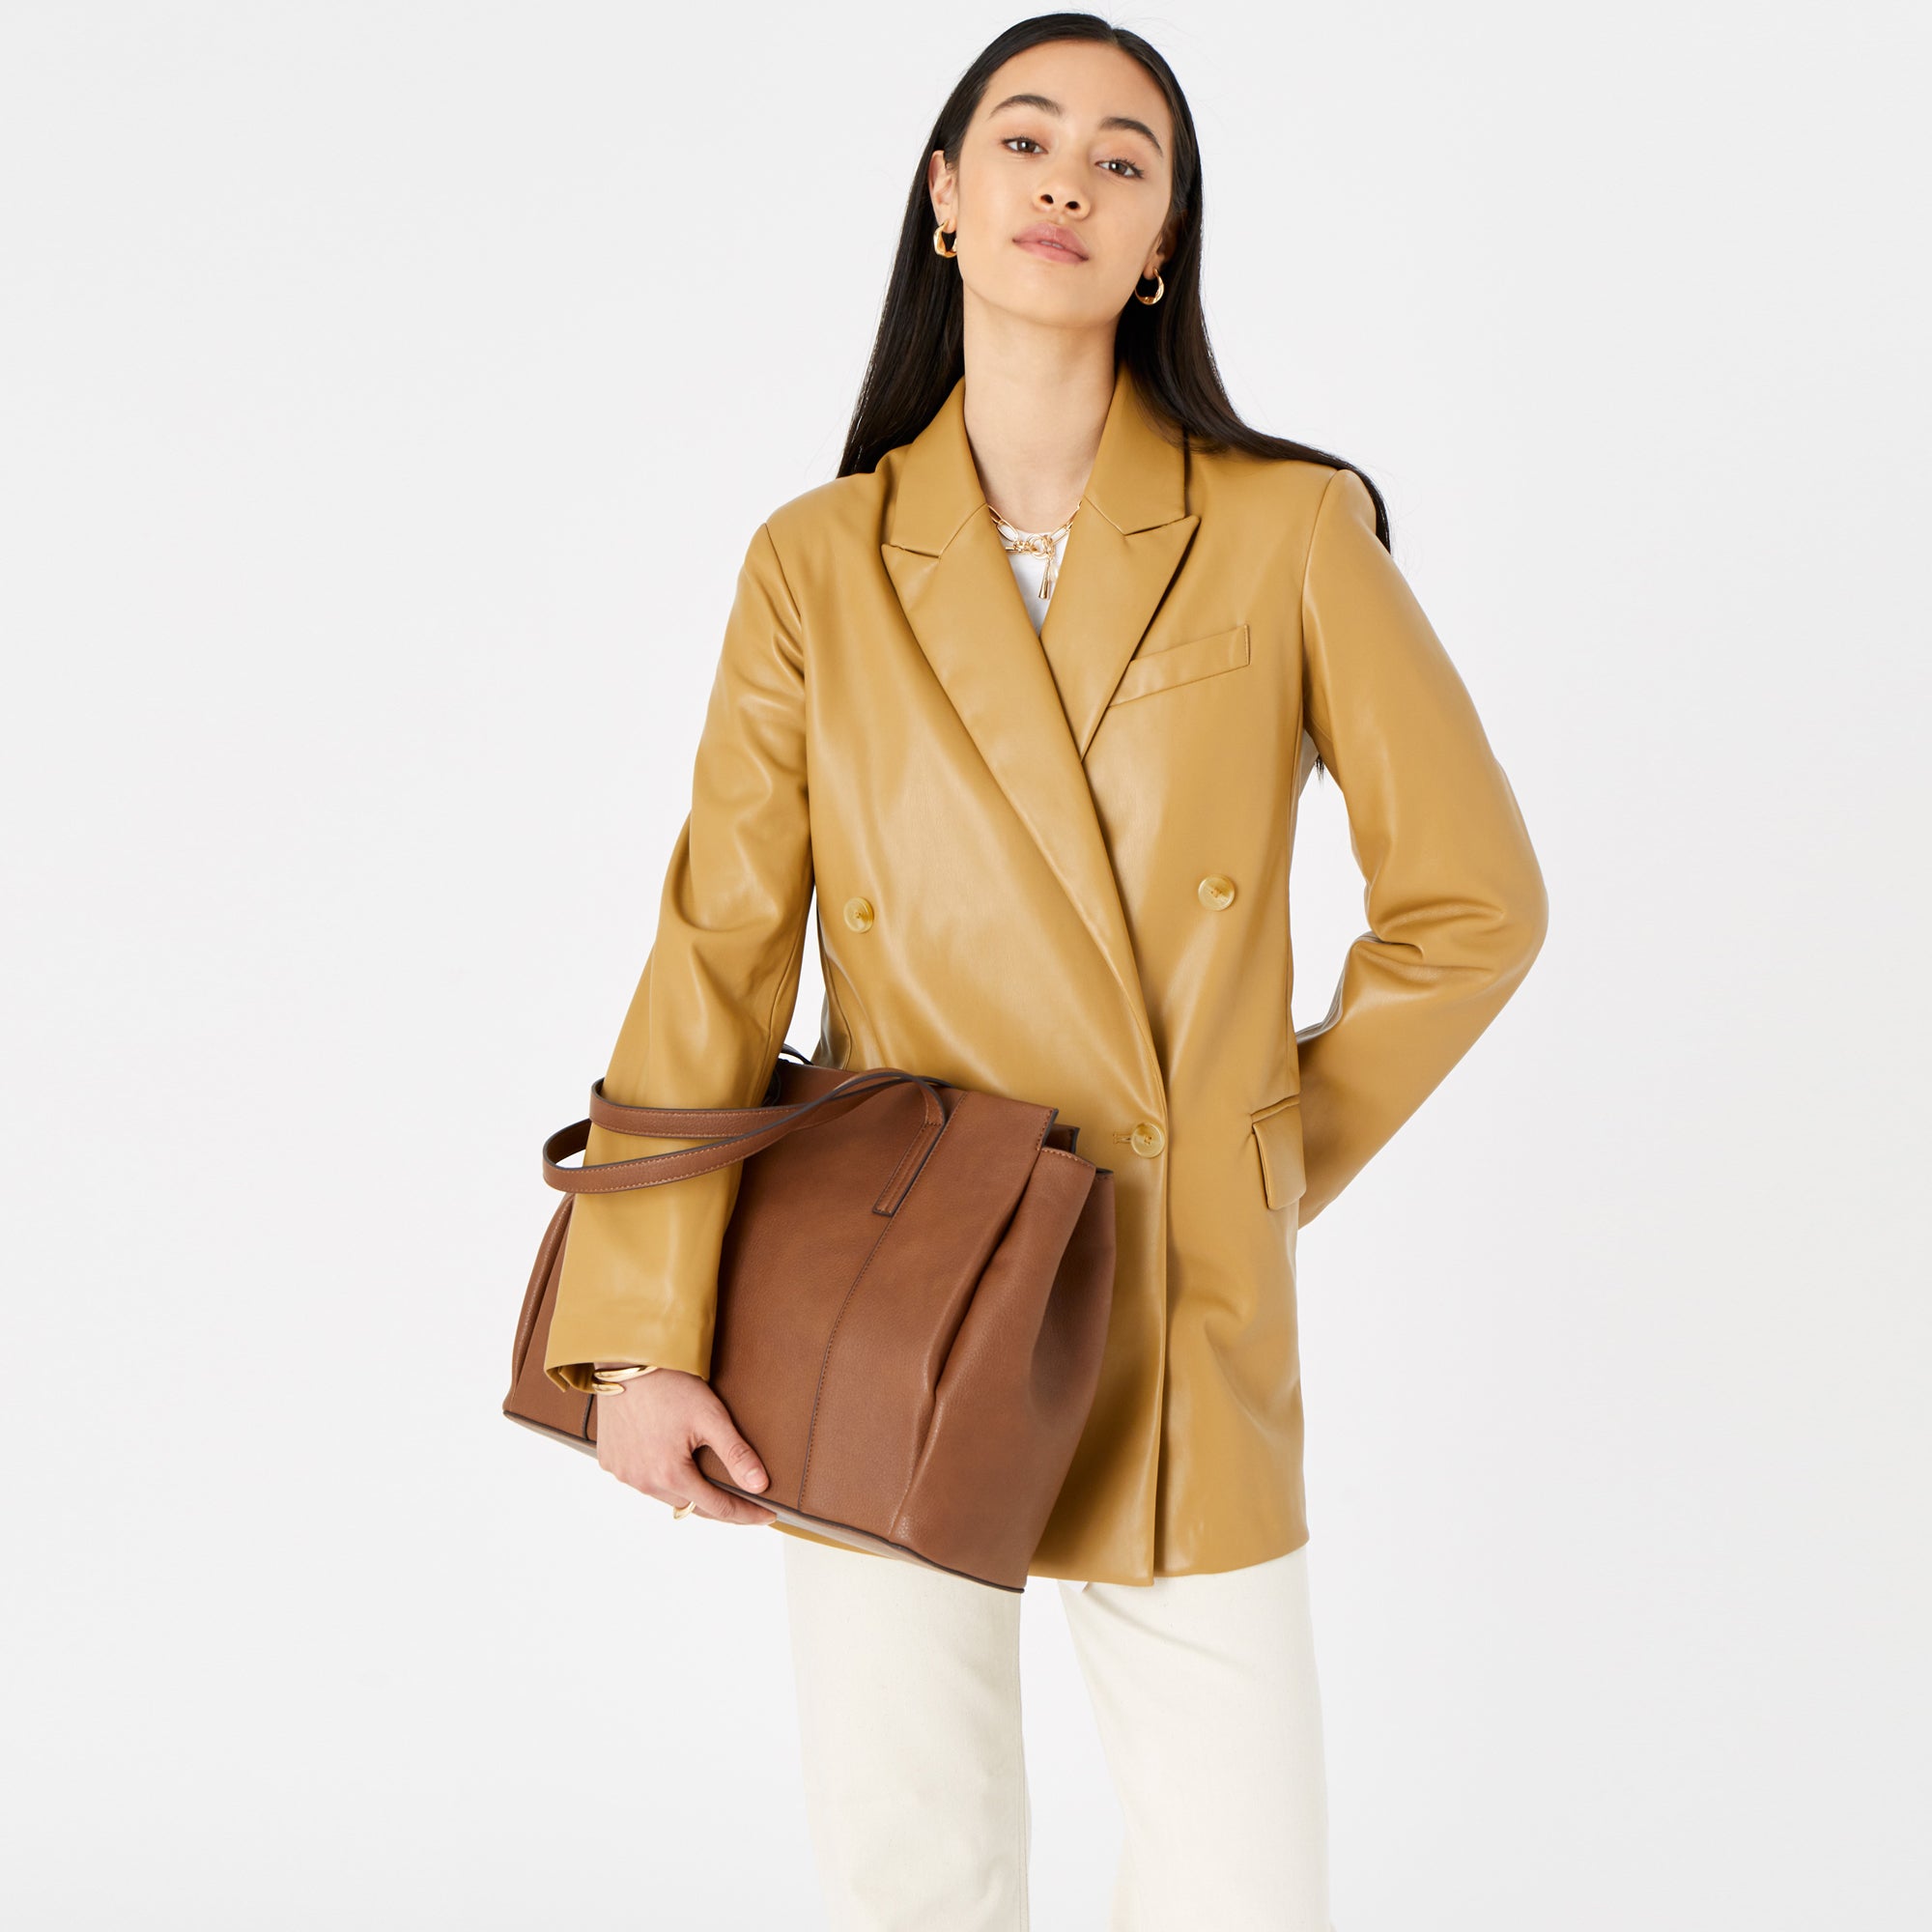 Accessorize London Women's Faux Leather Tan Lauren Workbag